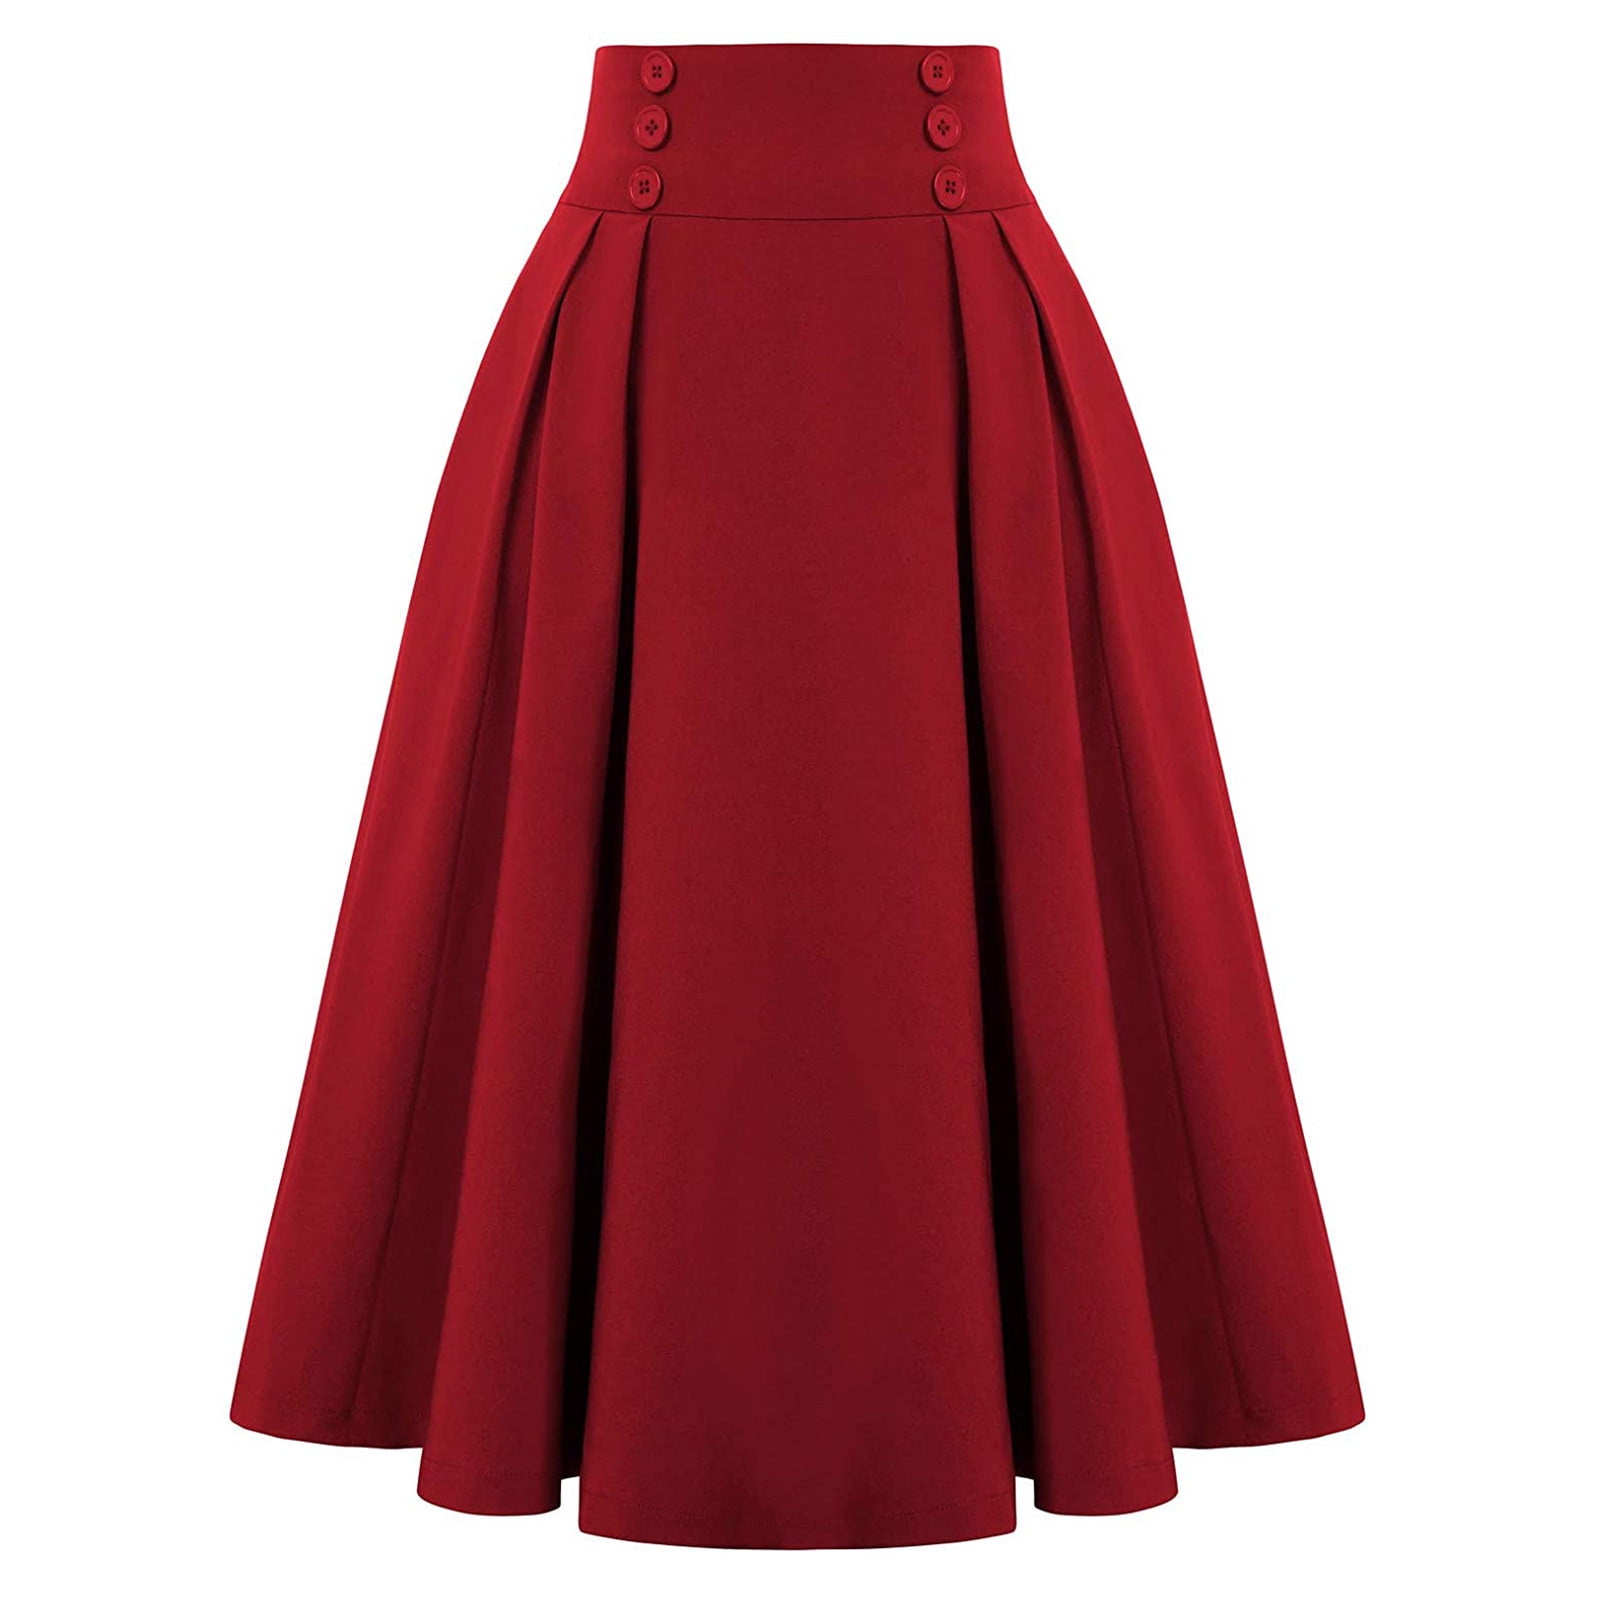 Women's High Waist Long Skirt A-Line Pockets Skirt Flared Vintage Skirt